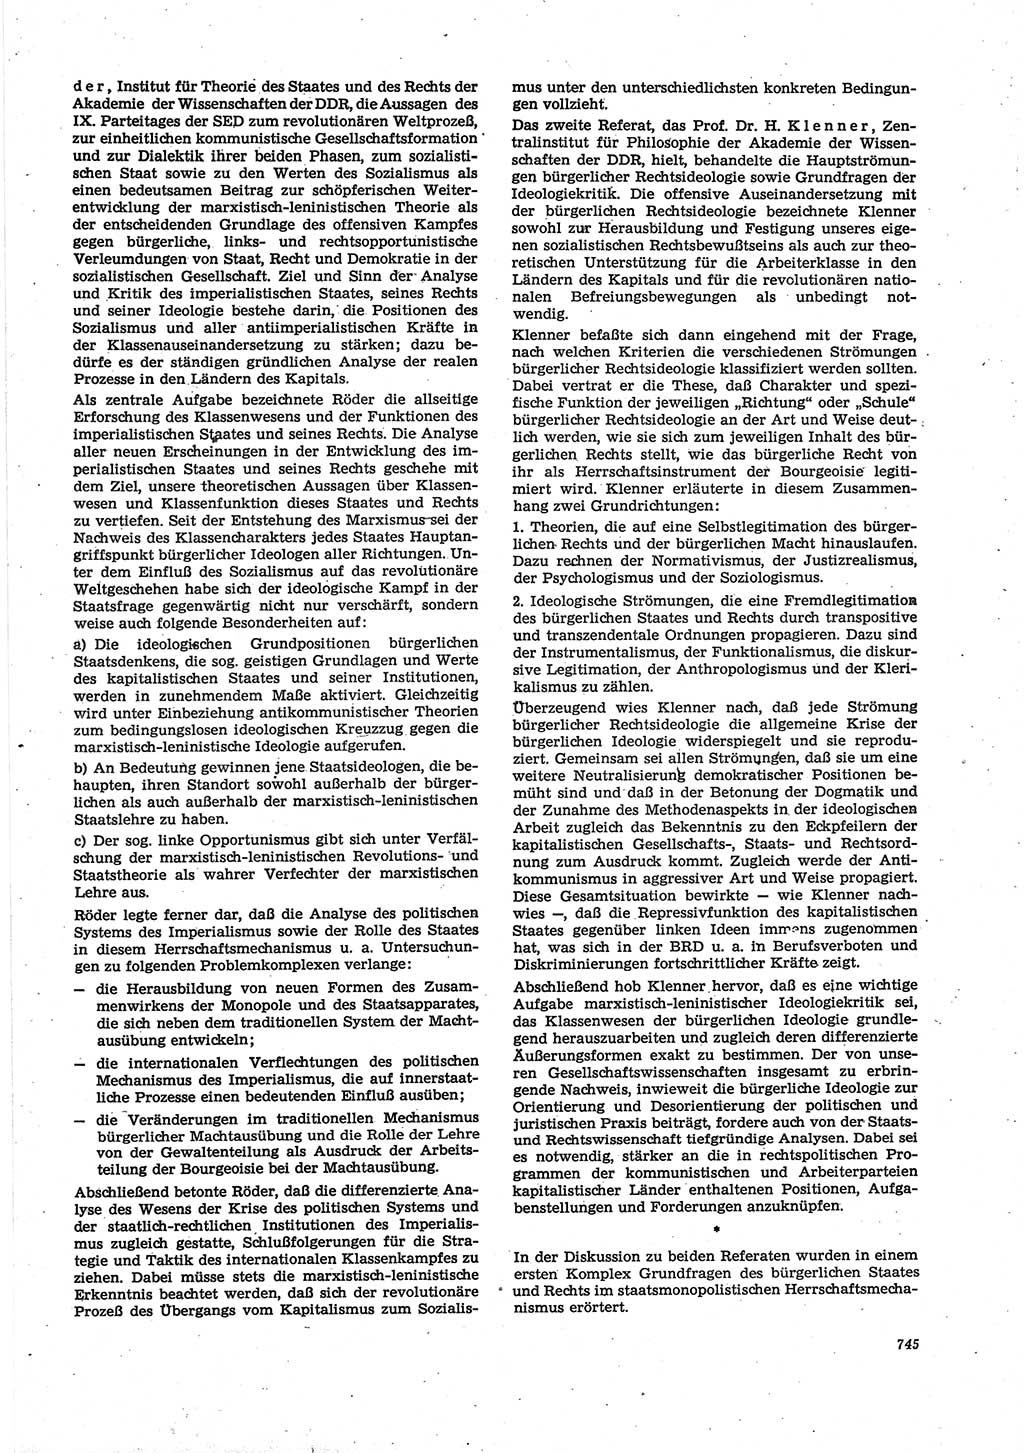 Neue Justiz (NJ), Zeitschrift für Recht und Rechtswissenschaft [Deutsche Demokratische Republik (DDR)], 30. Jahrgang 1976, Seite 745 (NJ DDR 1976, S. 745)